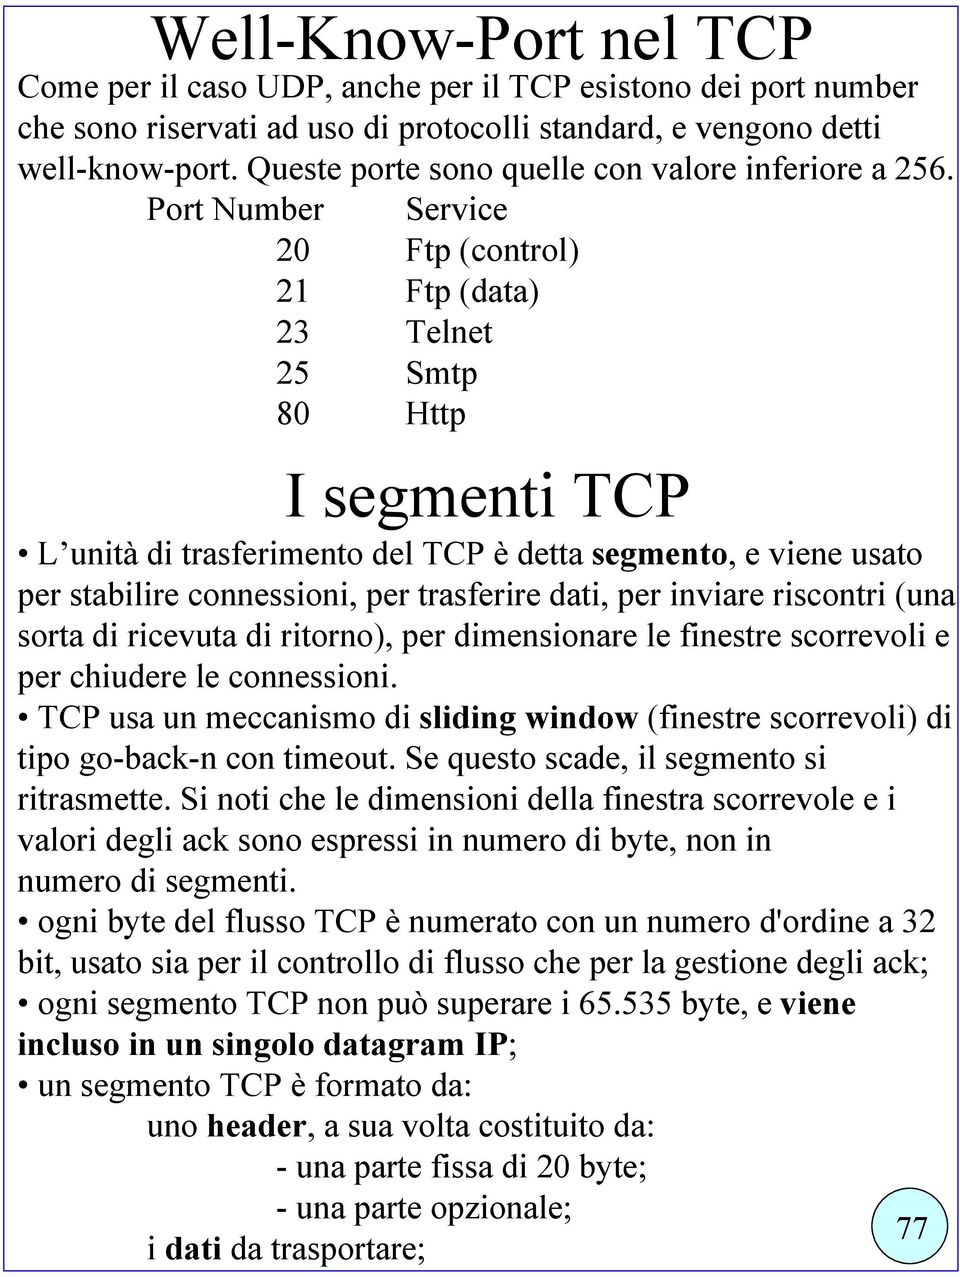 Port Number Service 20 Ftp (control) 21 Ftp (data) 23 Telnet 25 Smtp 80 Http I segmenti TCP L unità di trasferimento del TCP è detta segmento, e viene usato per stabilire connessioni, per trasferire